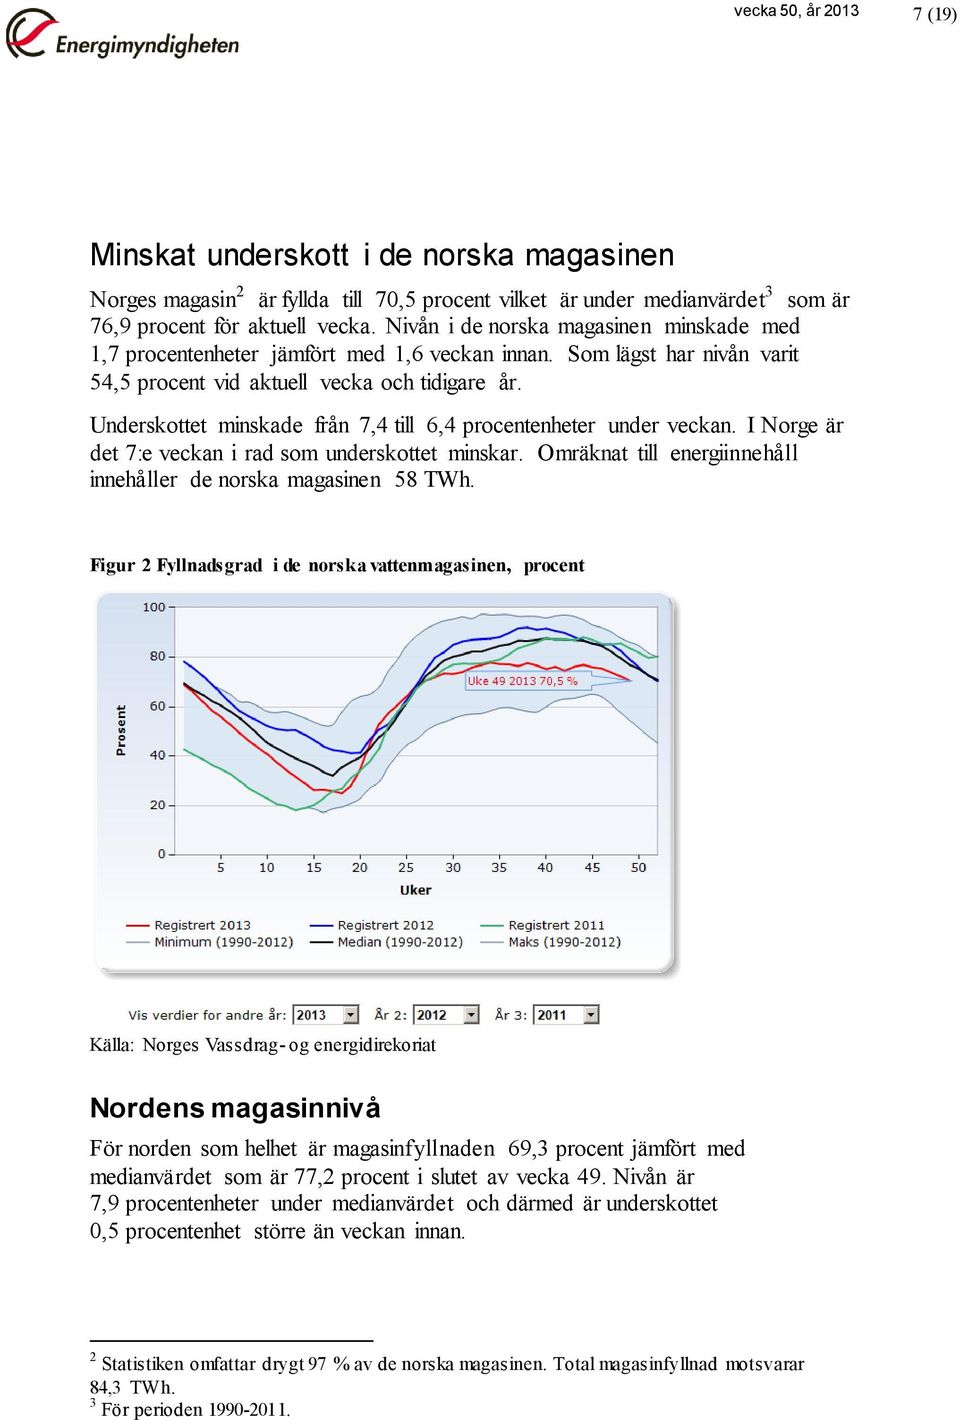 Underskottet minskade från 7,4 till 6,4 procentenheter under veckan. I Norge är det 7:e veckan i rad som underskottet minskar. Omräknat till energiinnehåll innehåller de norska magasinen 58 TWh.